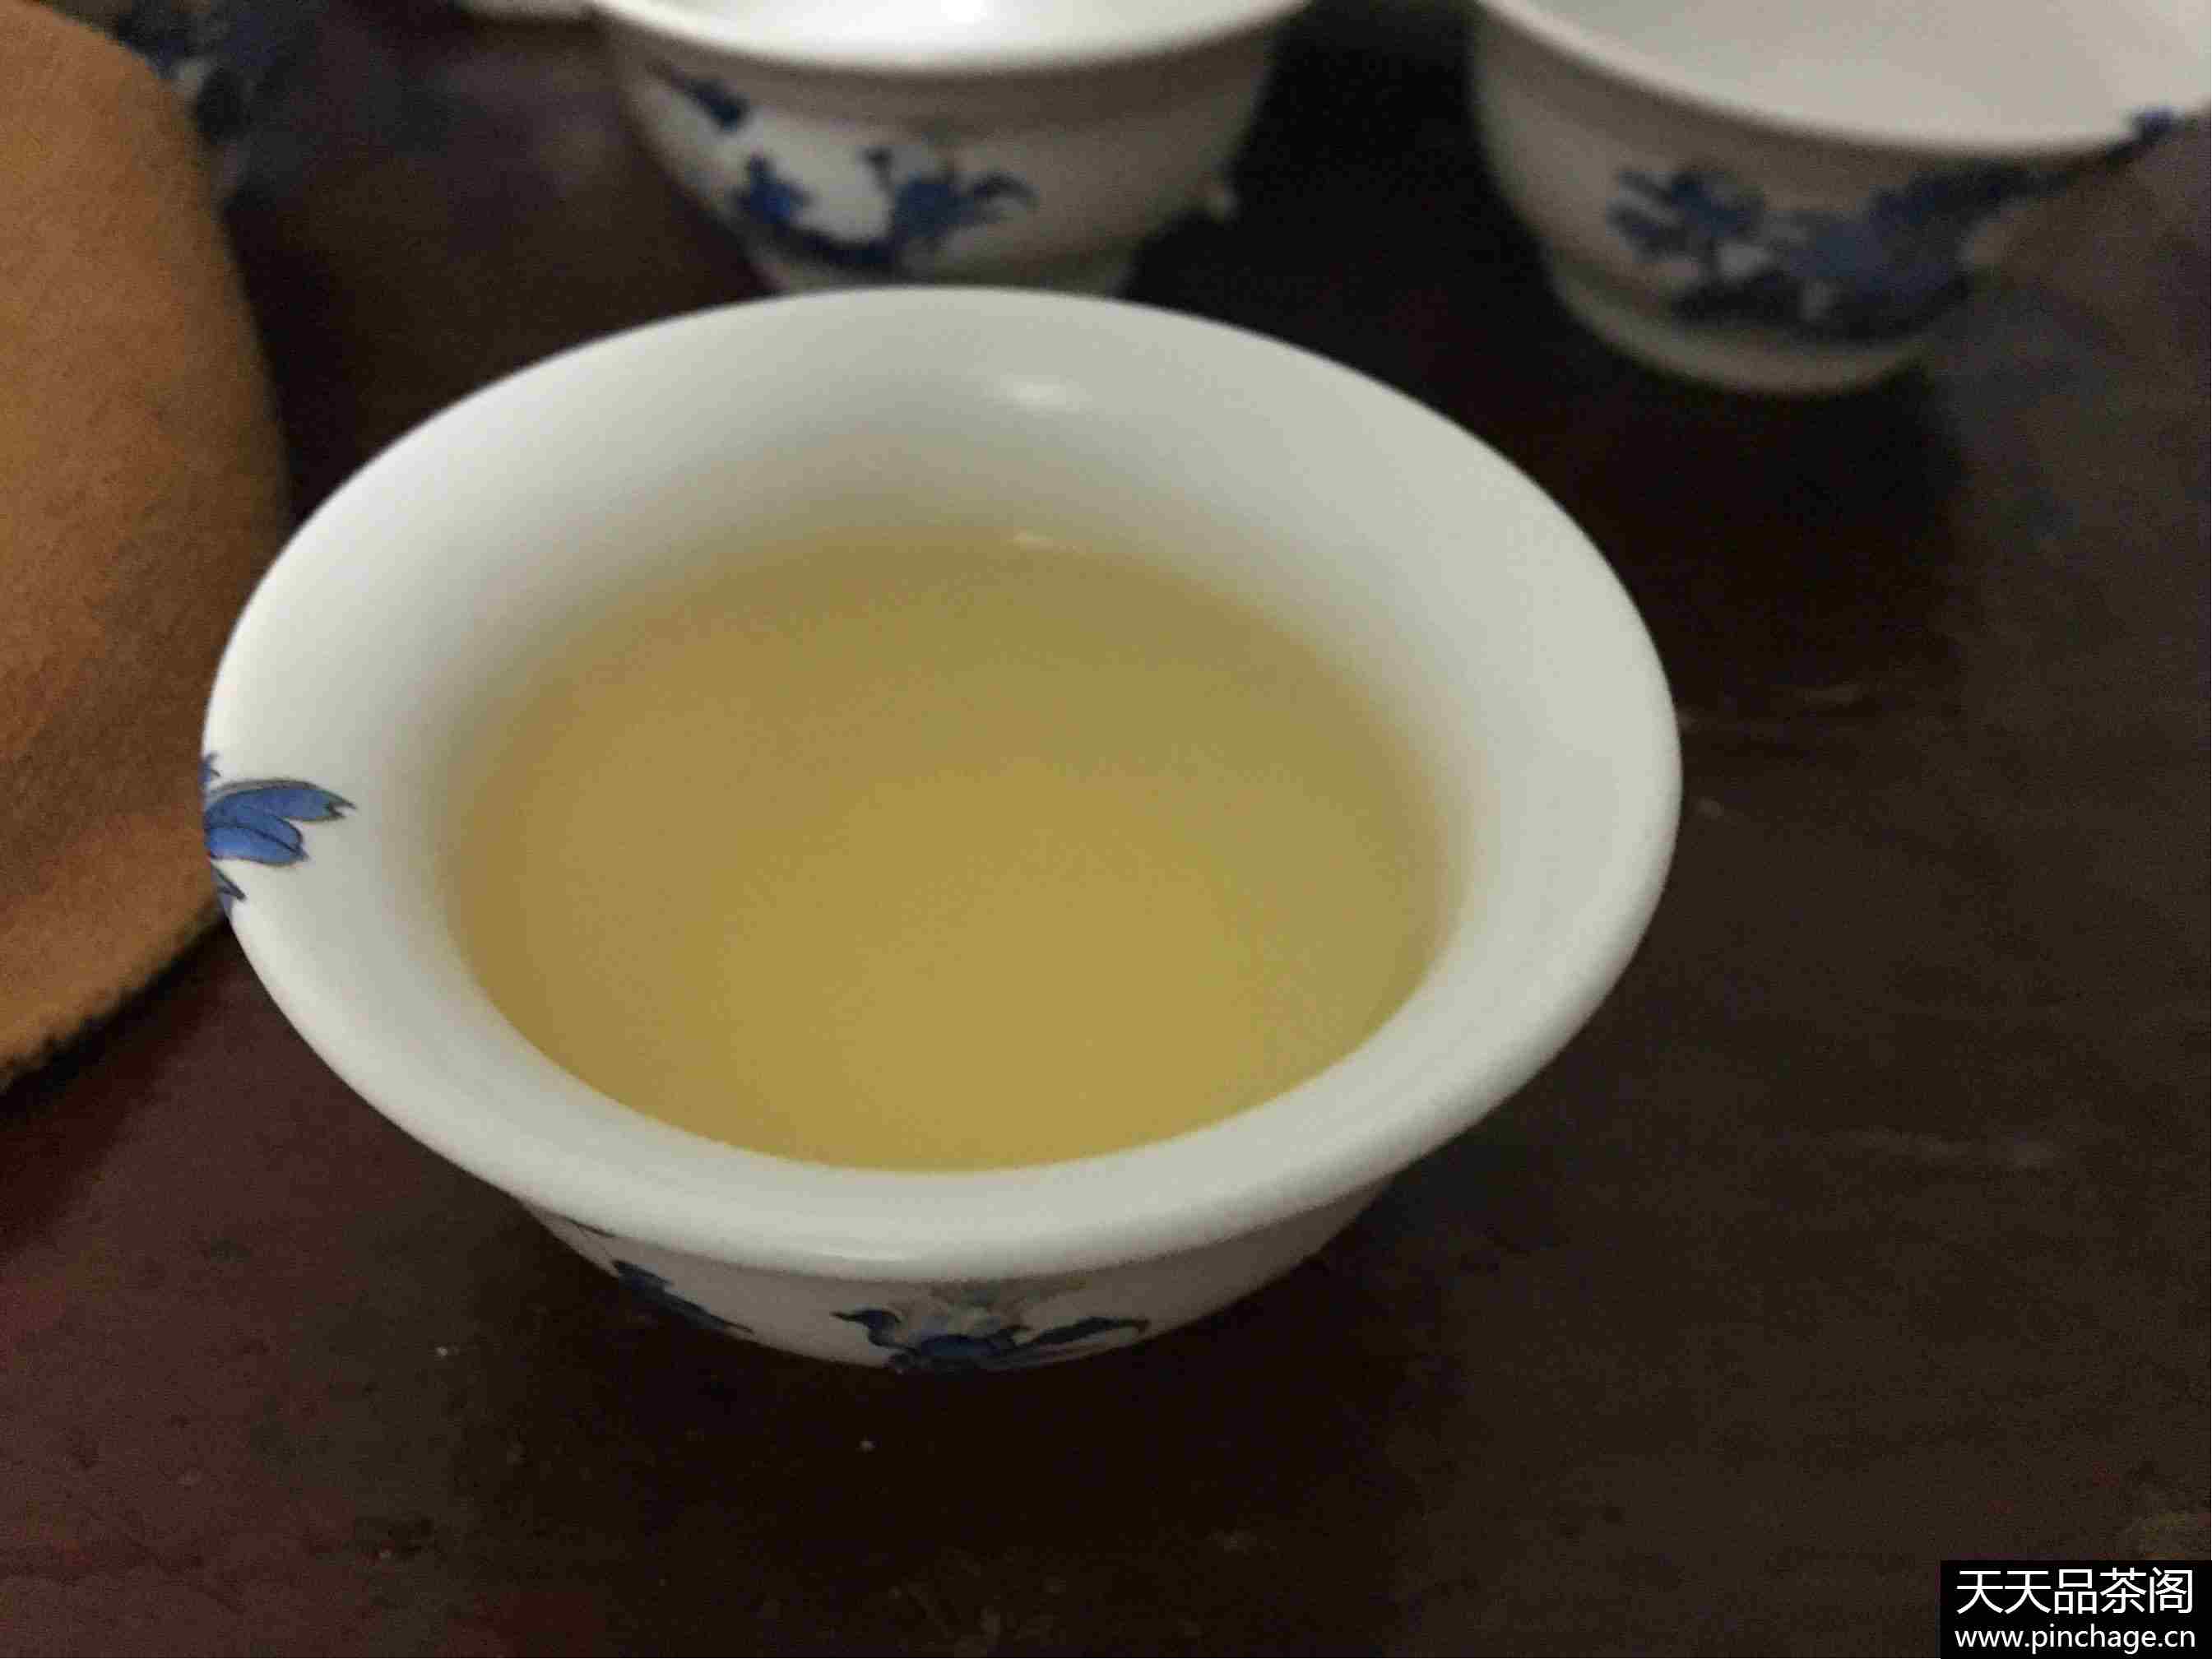 中国质造国画牡丹德化高白瓷茶具